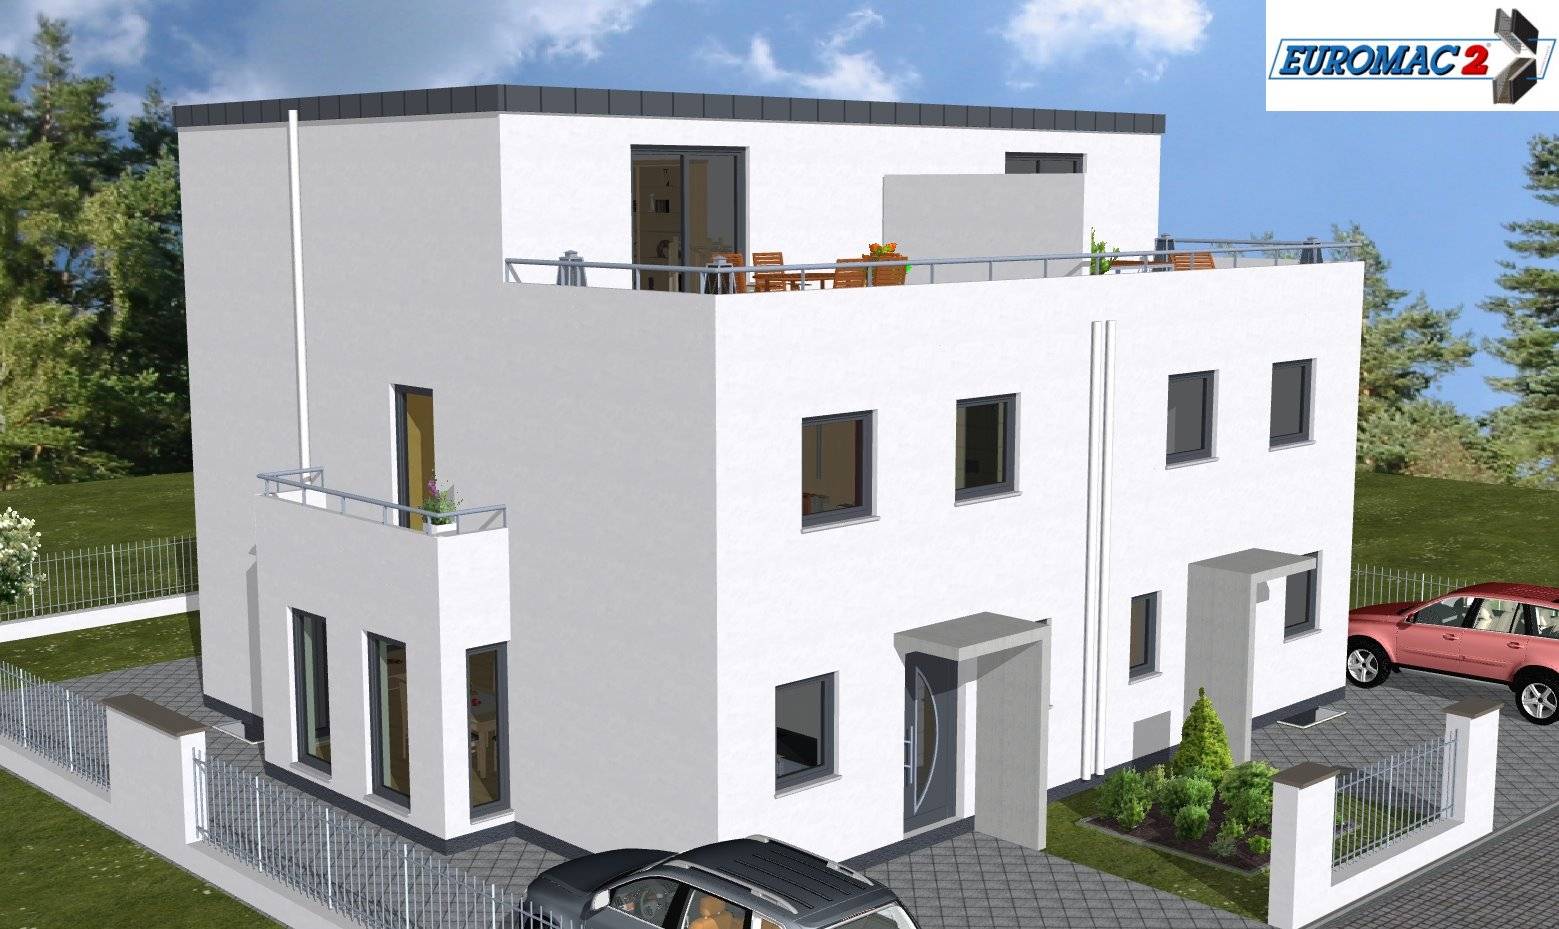 Massivhaus Trend 160 FD von EUROMAC 2 S.A.S. Bausatzhaus ab 44819€, Cubushaus Außenansicht 1